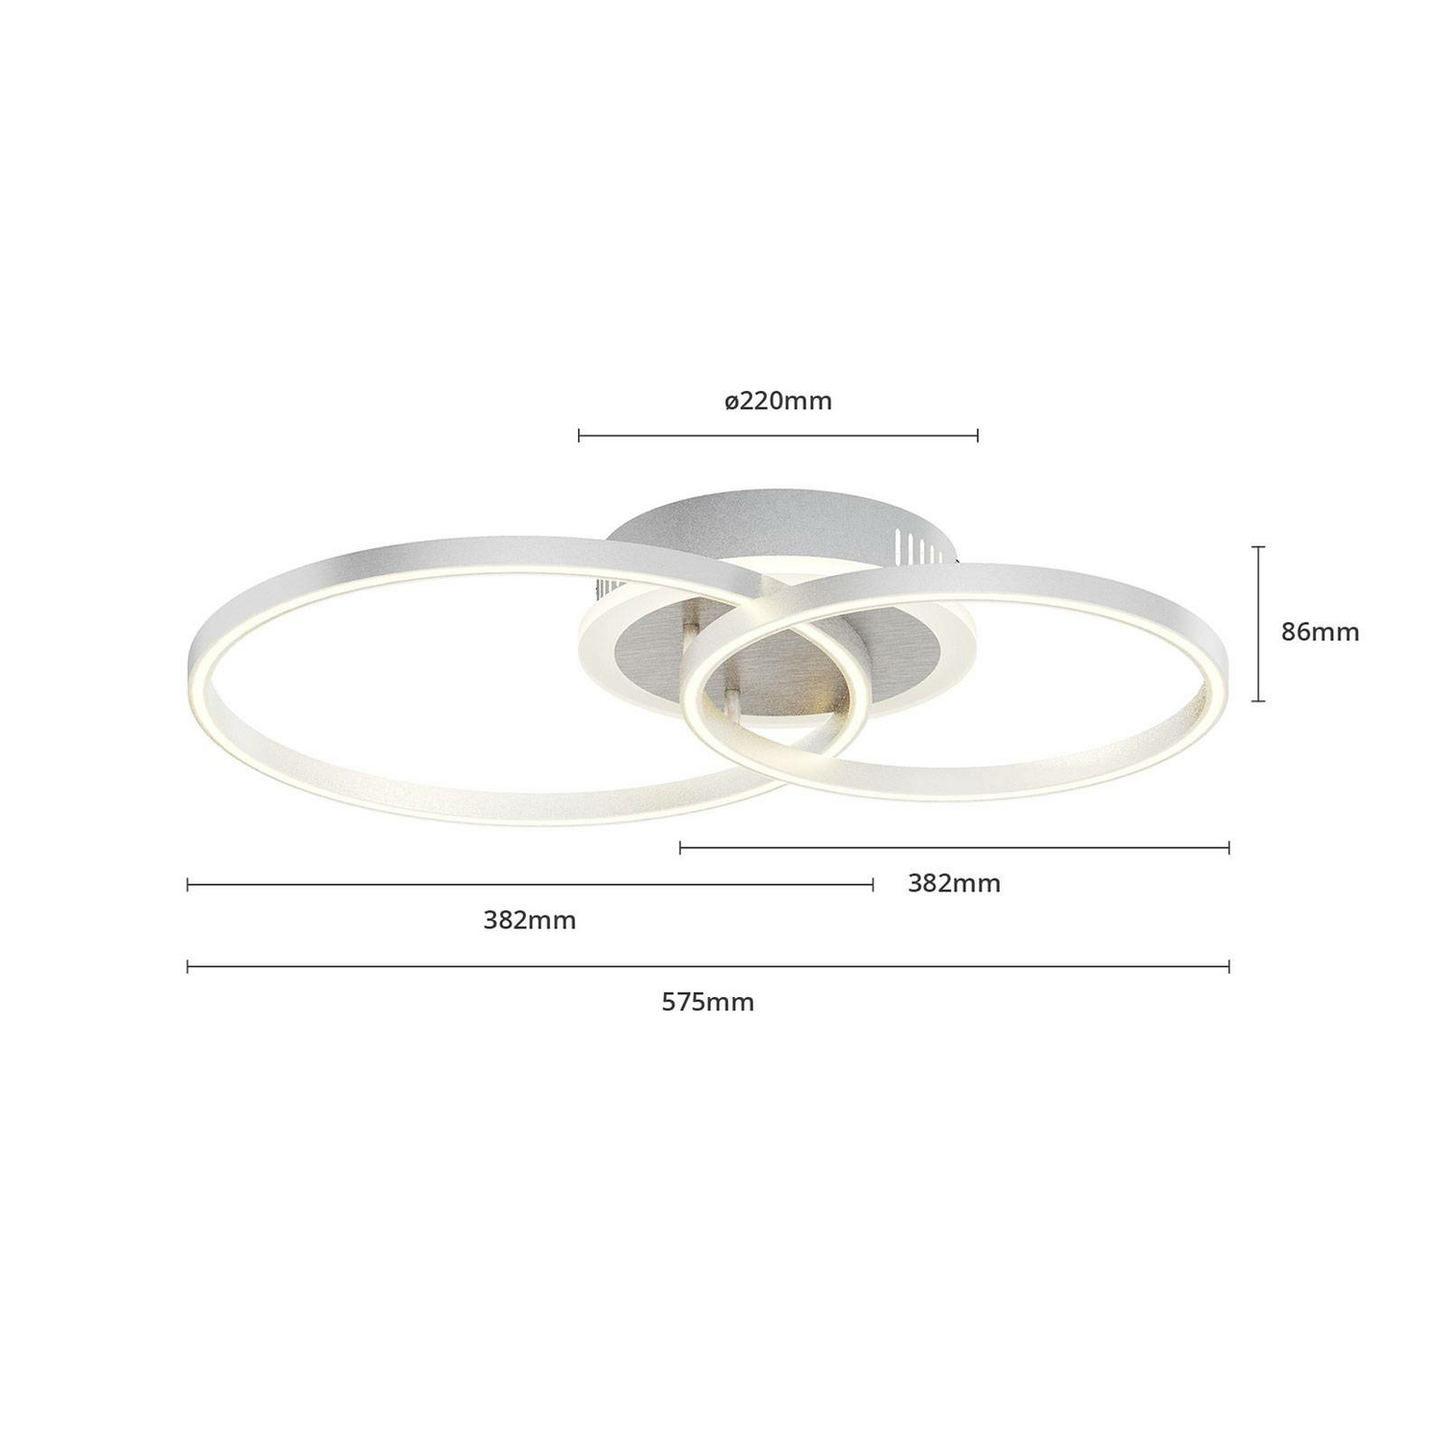 Lindby Smart Edica LED-Deckenleuchte Deckenlampe Lampe Leuchte 31W Alu nickel